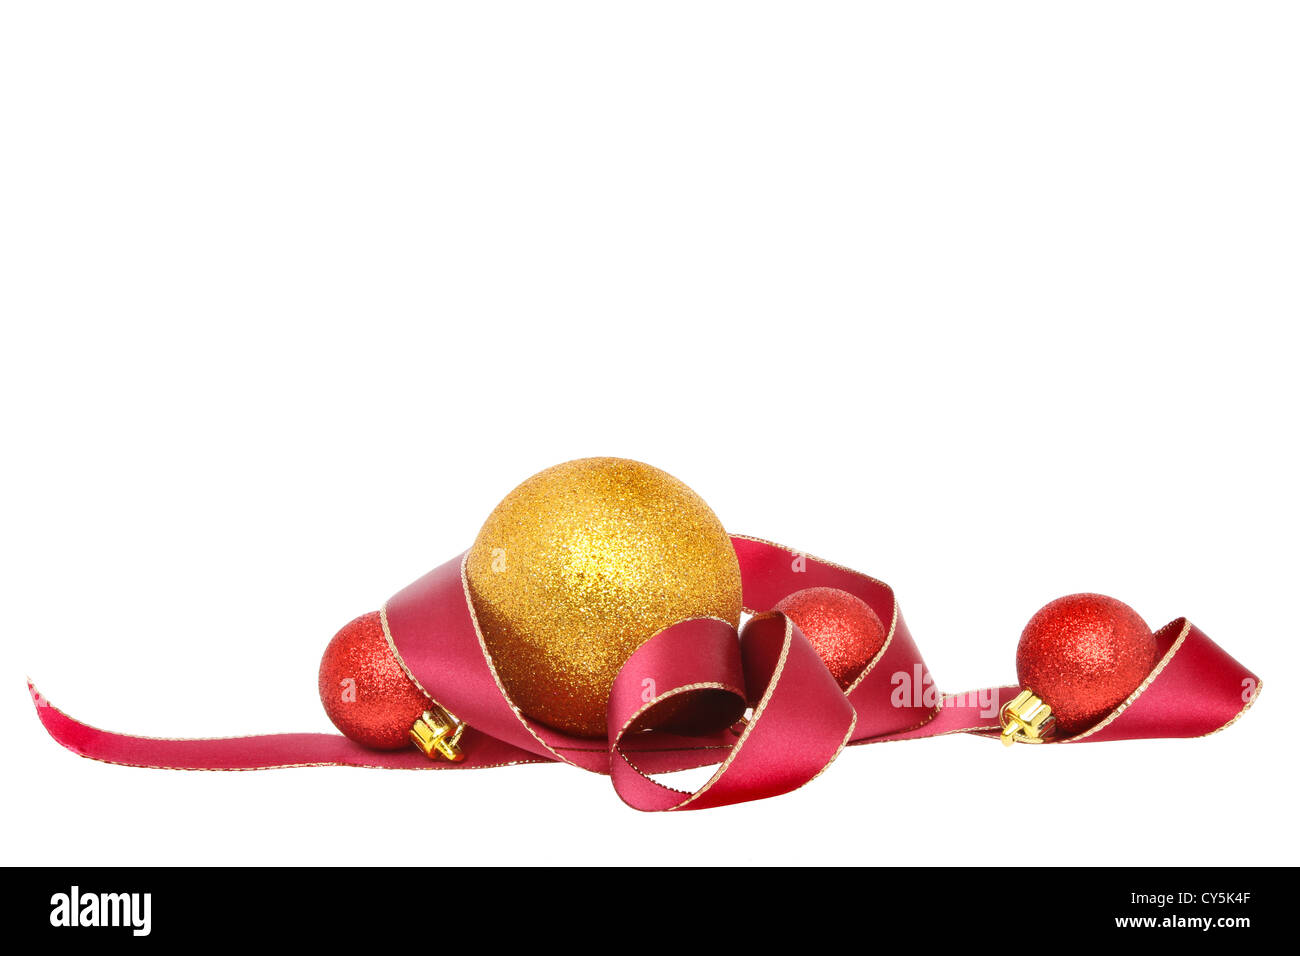 Motif de Noël d'or bordé d'un ruban rouge et or et boules rouges isolés contre white Banque D'Images